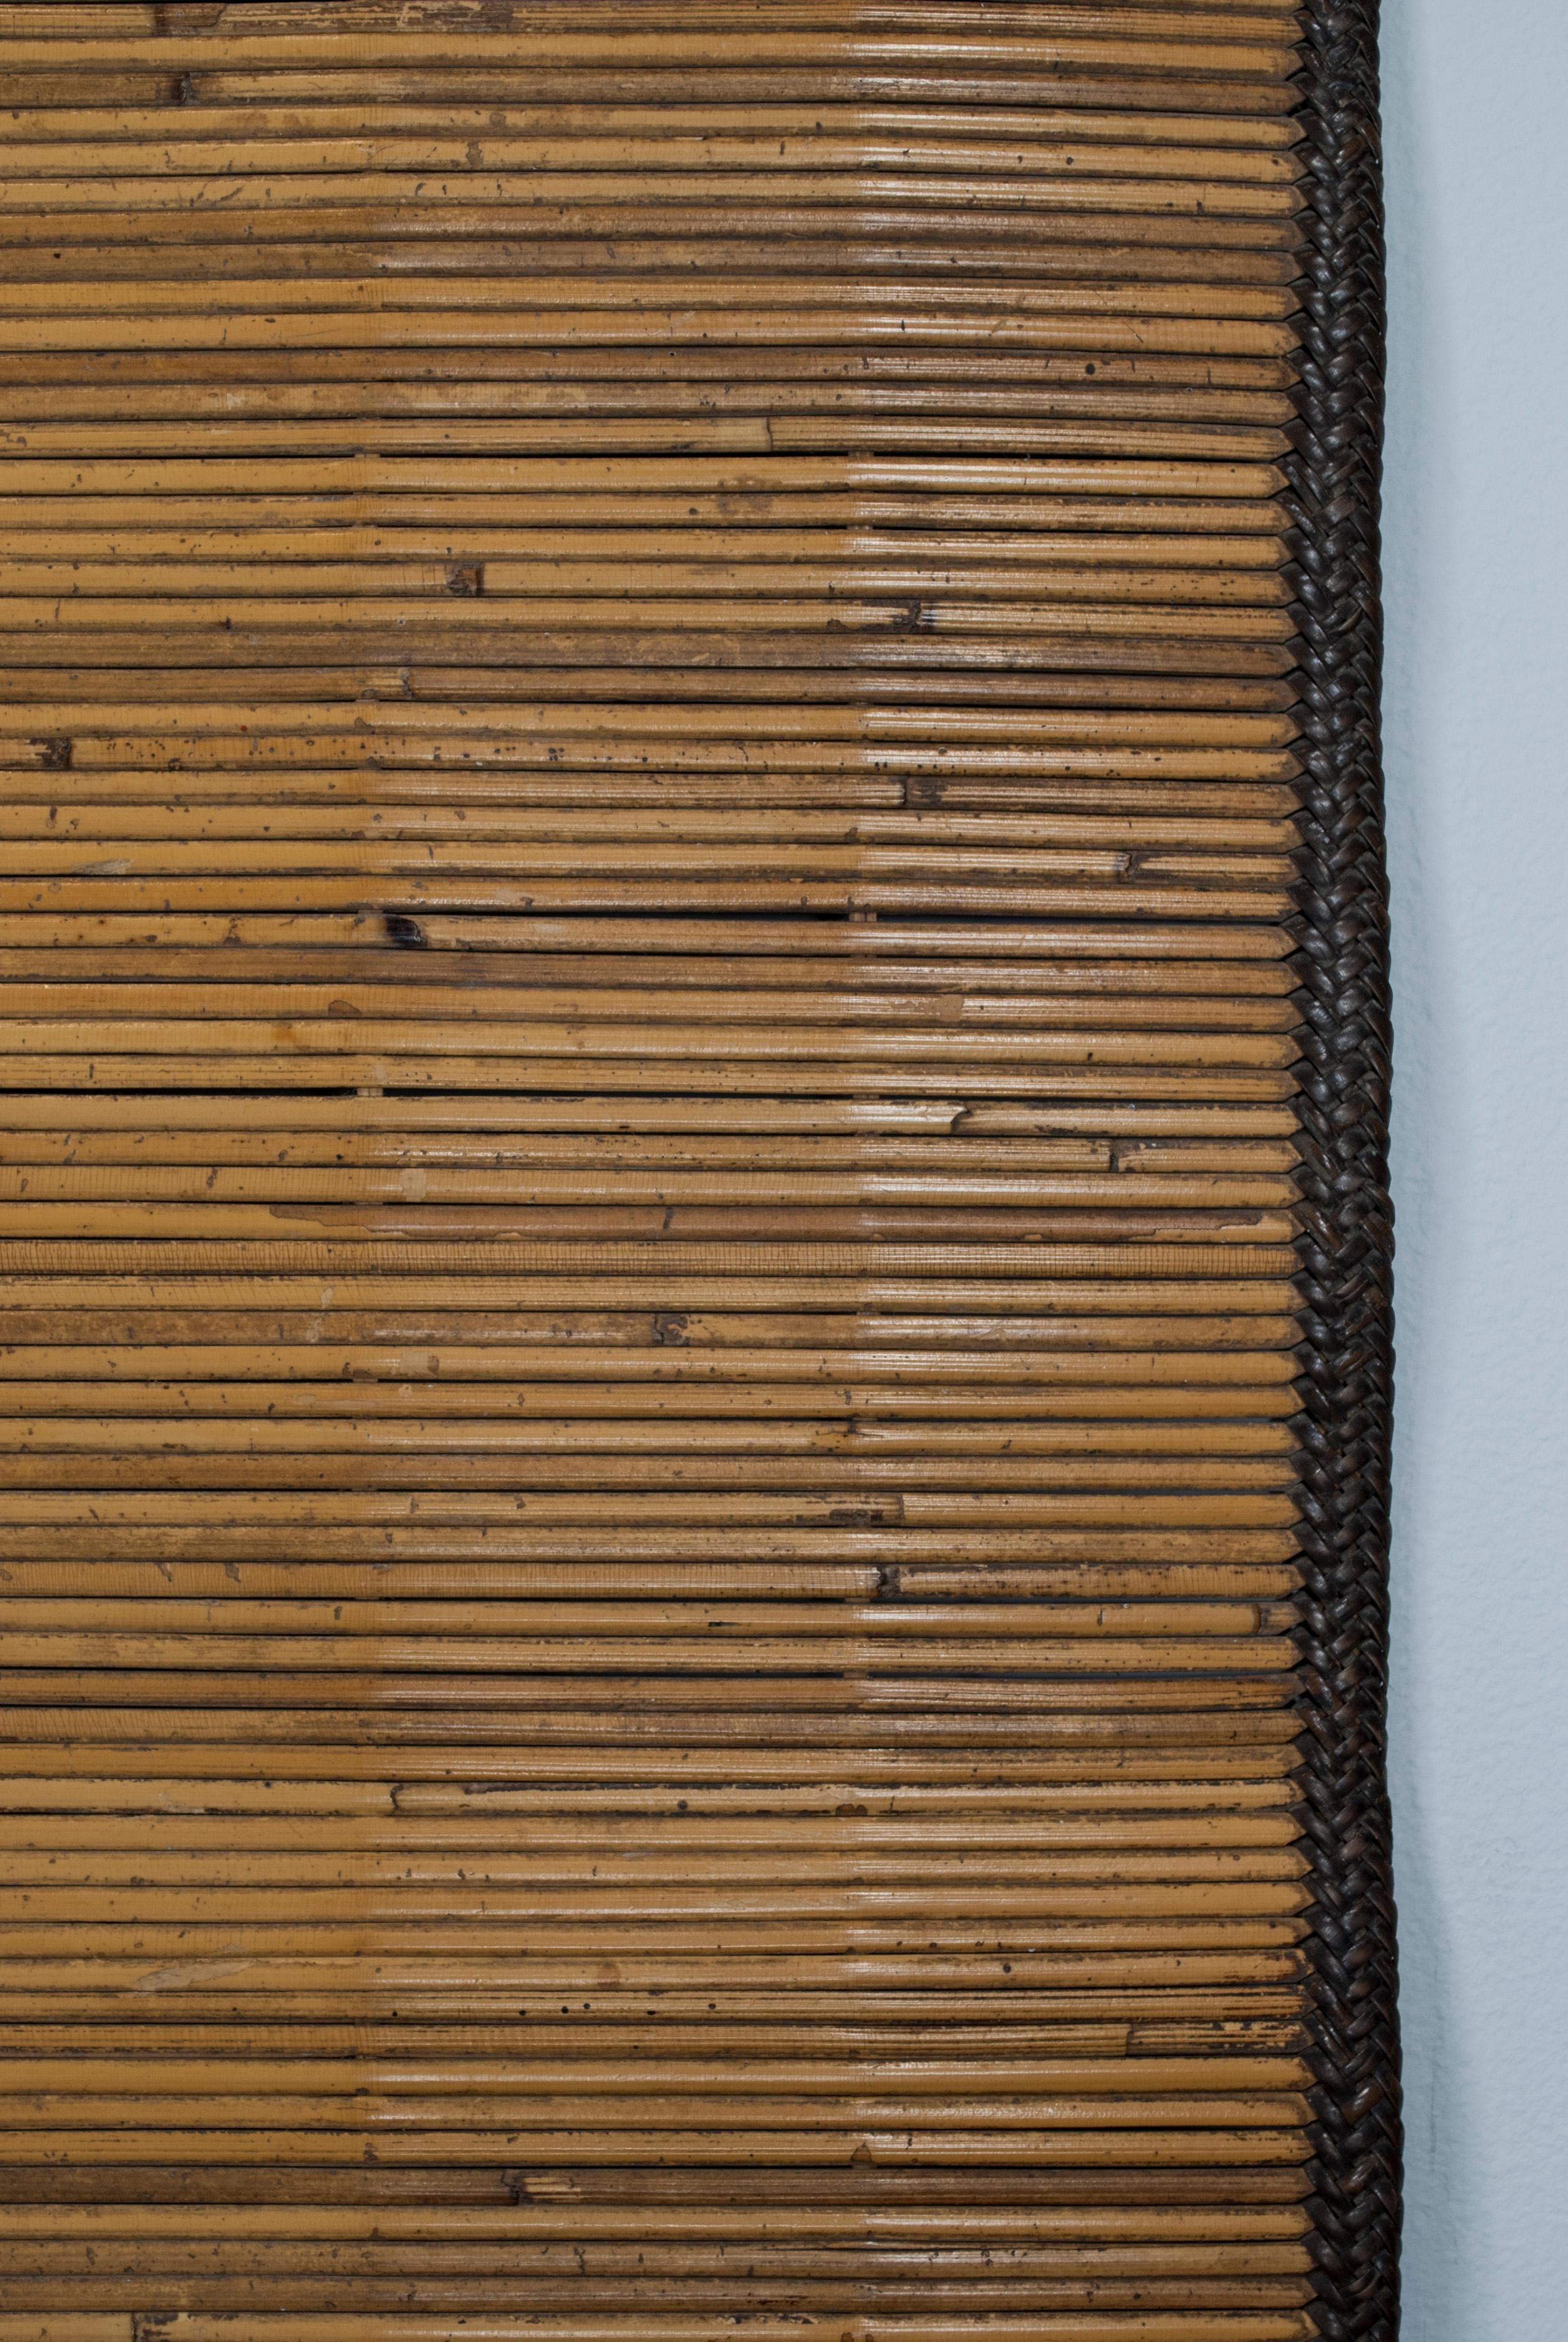 Tapis de roseau cérémonial datant d'environ 1900, Sumatra, Indonésie

Une natte en roseau merveilleusement préservée, utilisée lors de cérémonies dans le sud de Sumatra, en Indonésie. Les panneaux d'extrémité sont ornés d'un motif de poker en faux